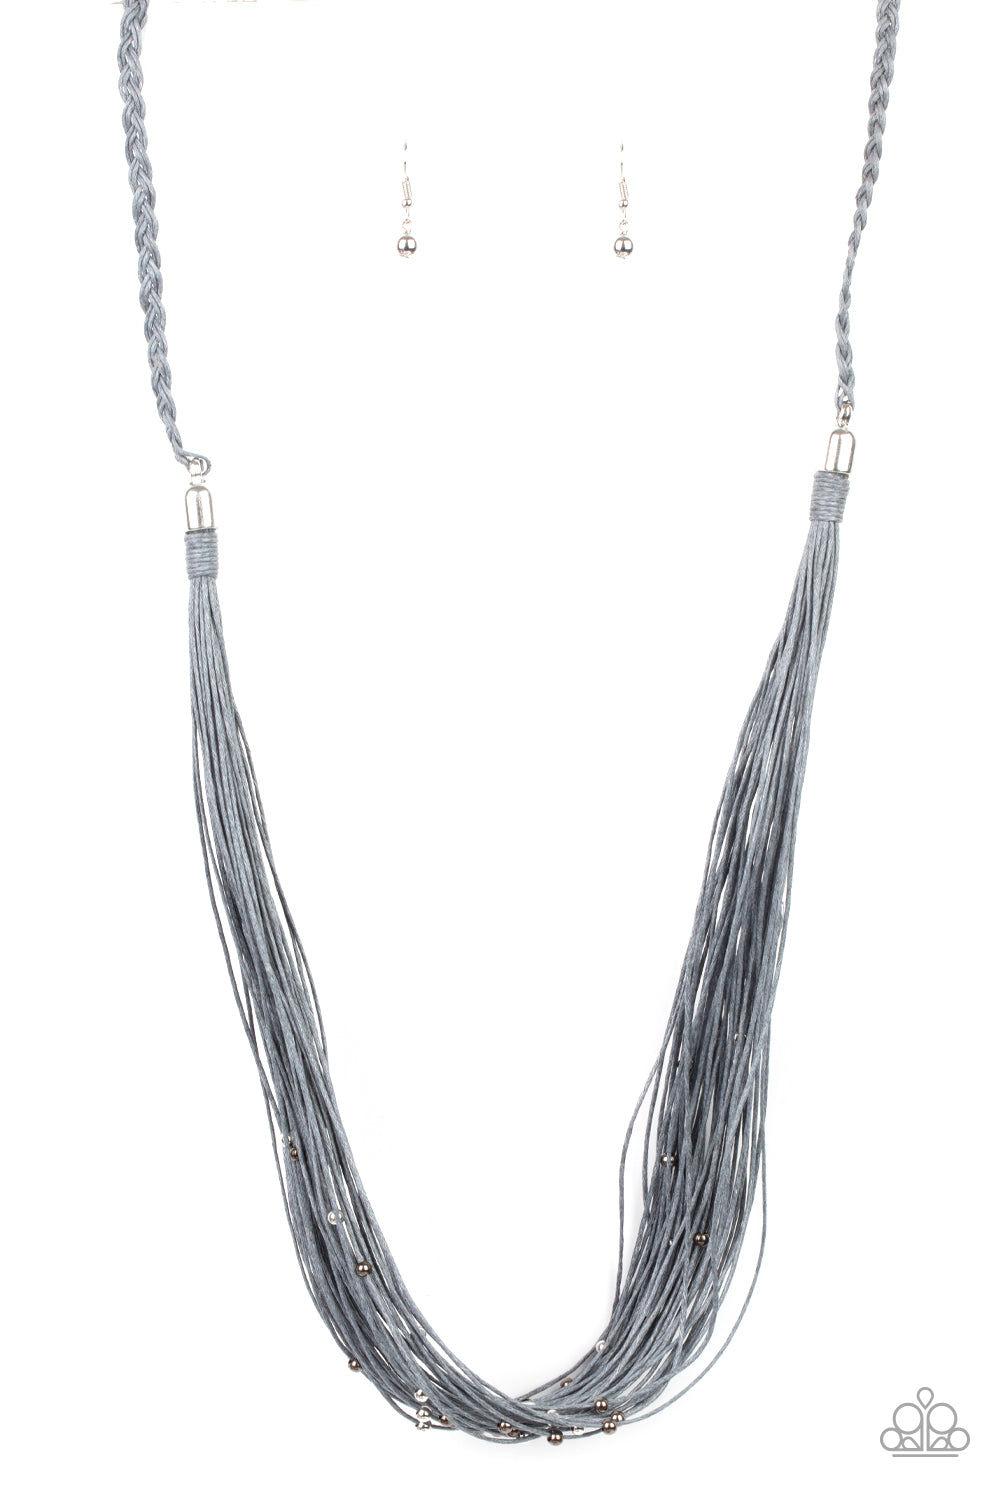 Homespun Artisan - silver - Paparazzi necklace